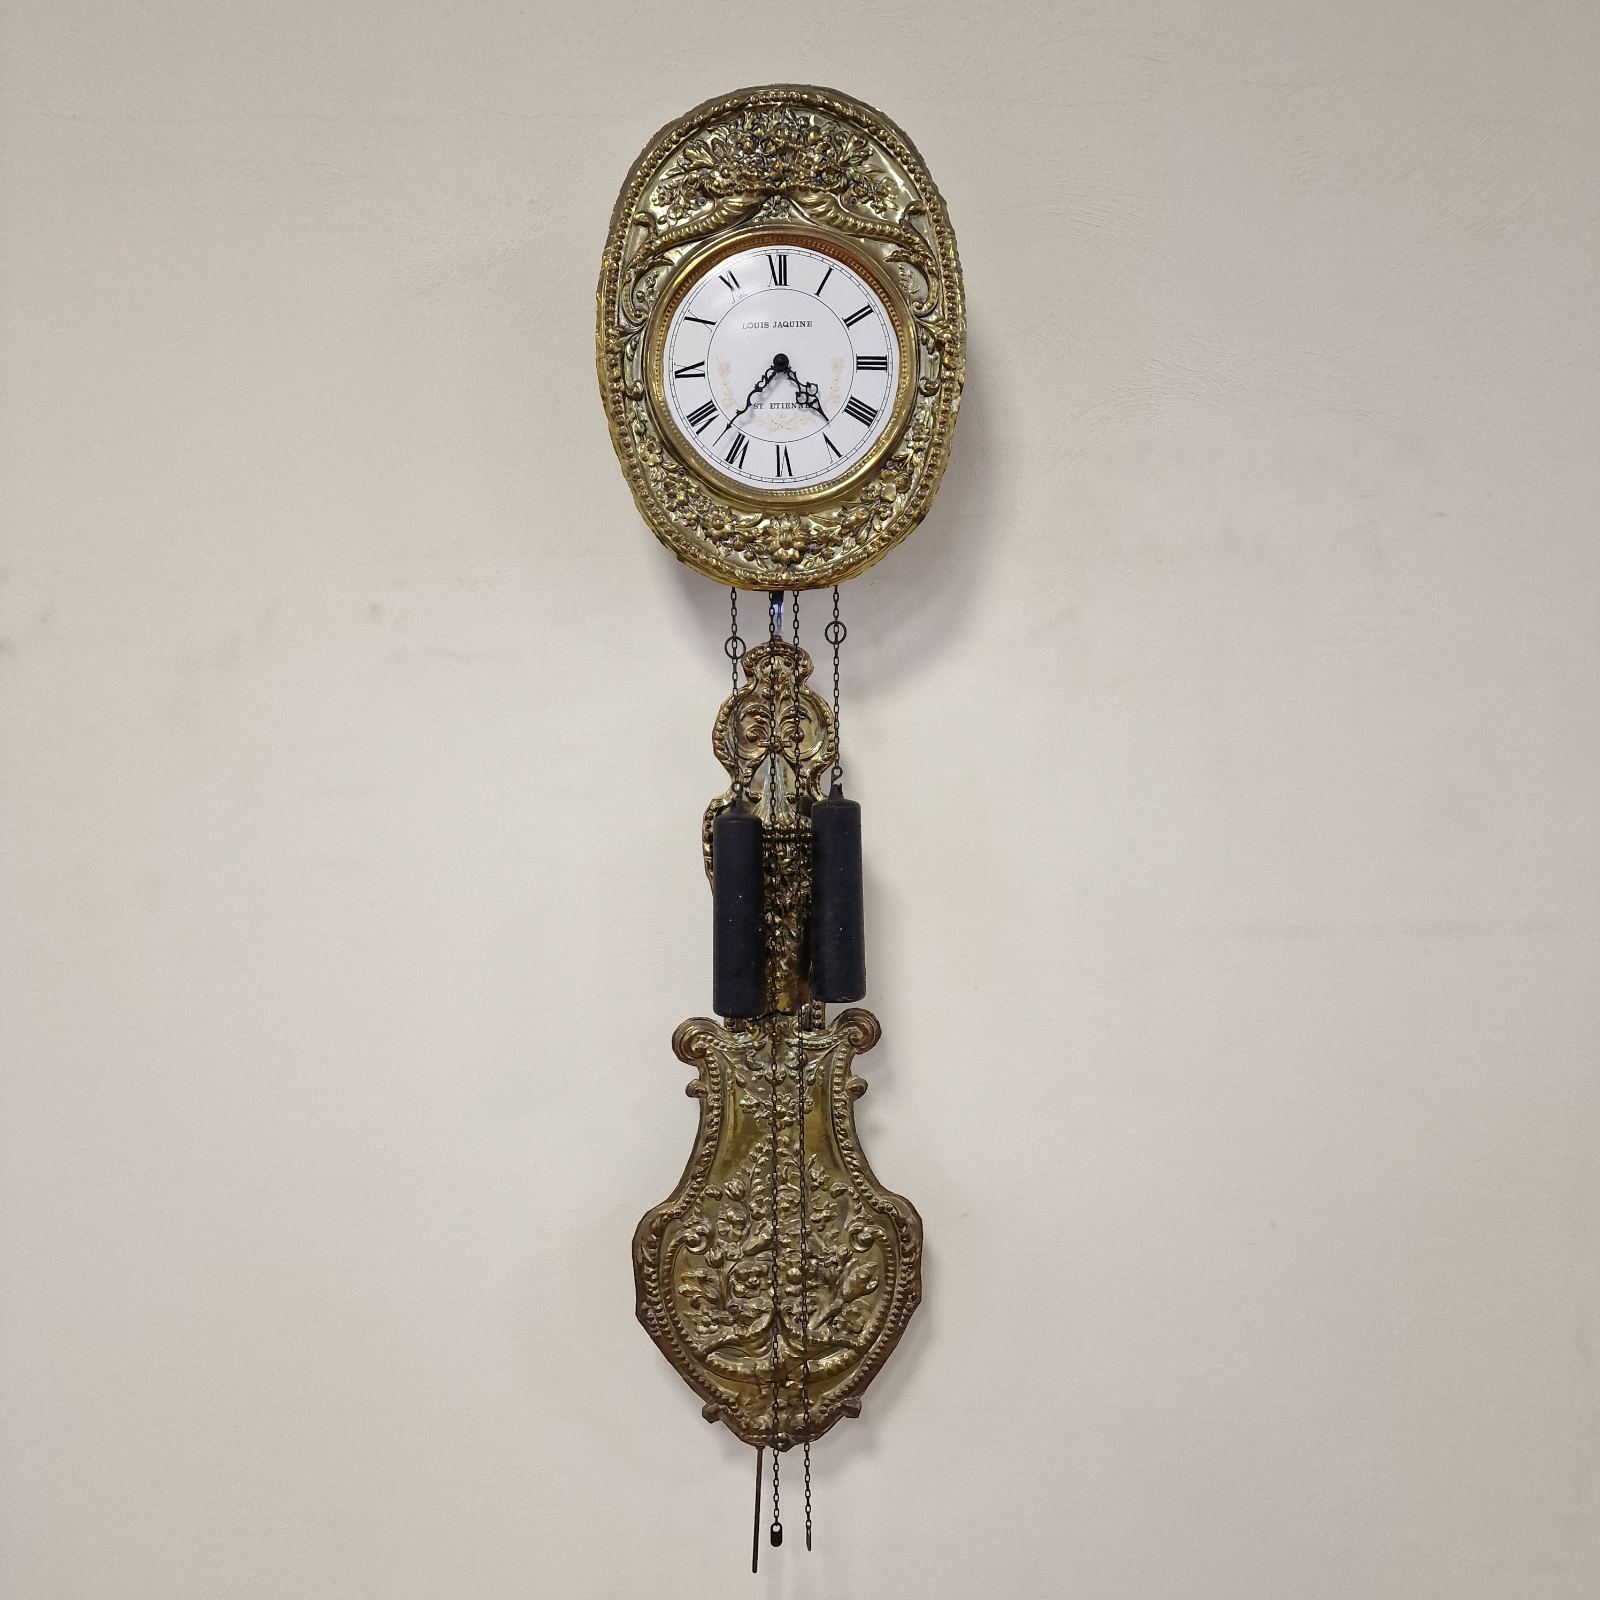 Стенен часовник Louis Jaquine St Etienne